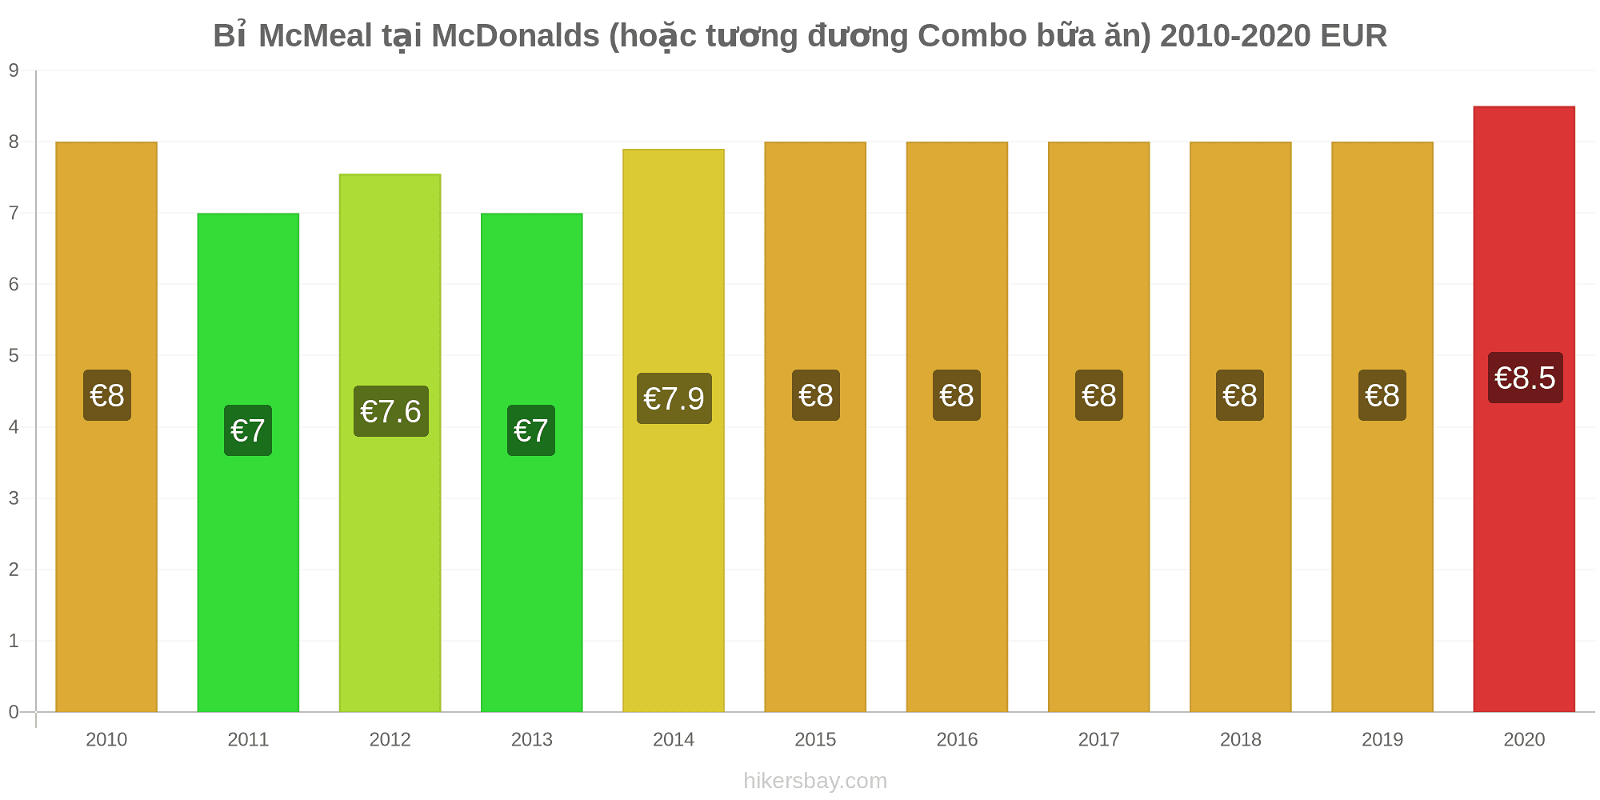 Bỉ thay đổi giá McMeal tại McDonalds (hoặc tương đương Combo bữa ăn) hikersbay.com